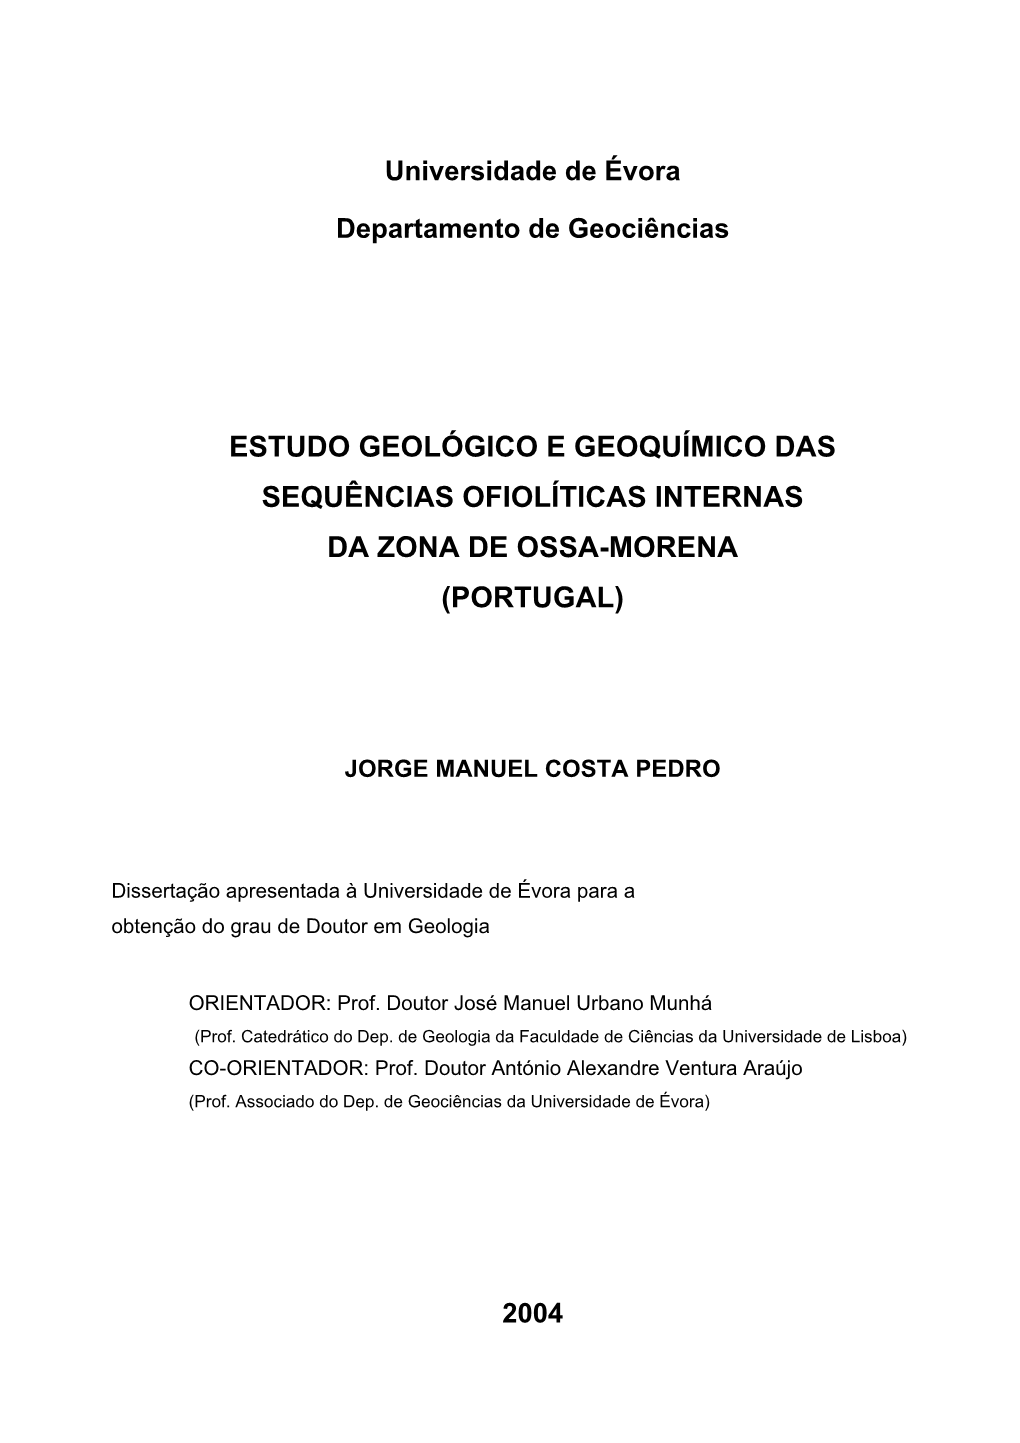 Estudo Geológico E Geoquímico Das Sequências Ofiolíticas Internas Da Zona De Ossa-Morena (Portugal)